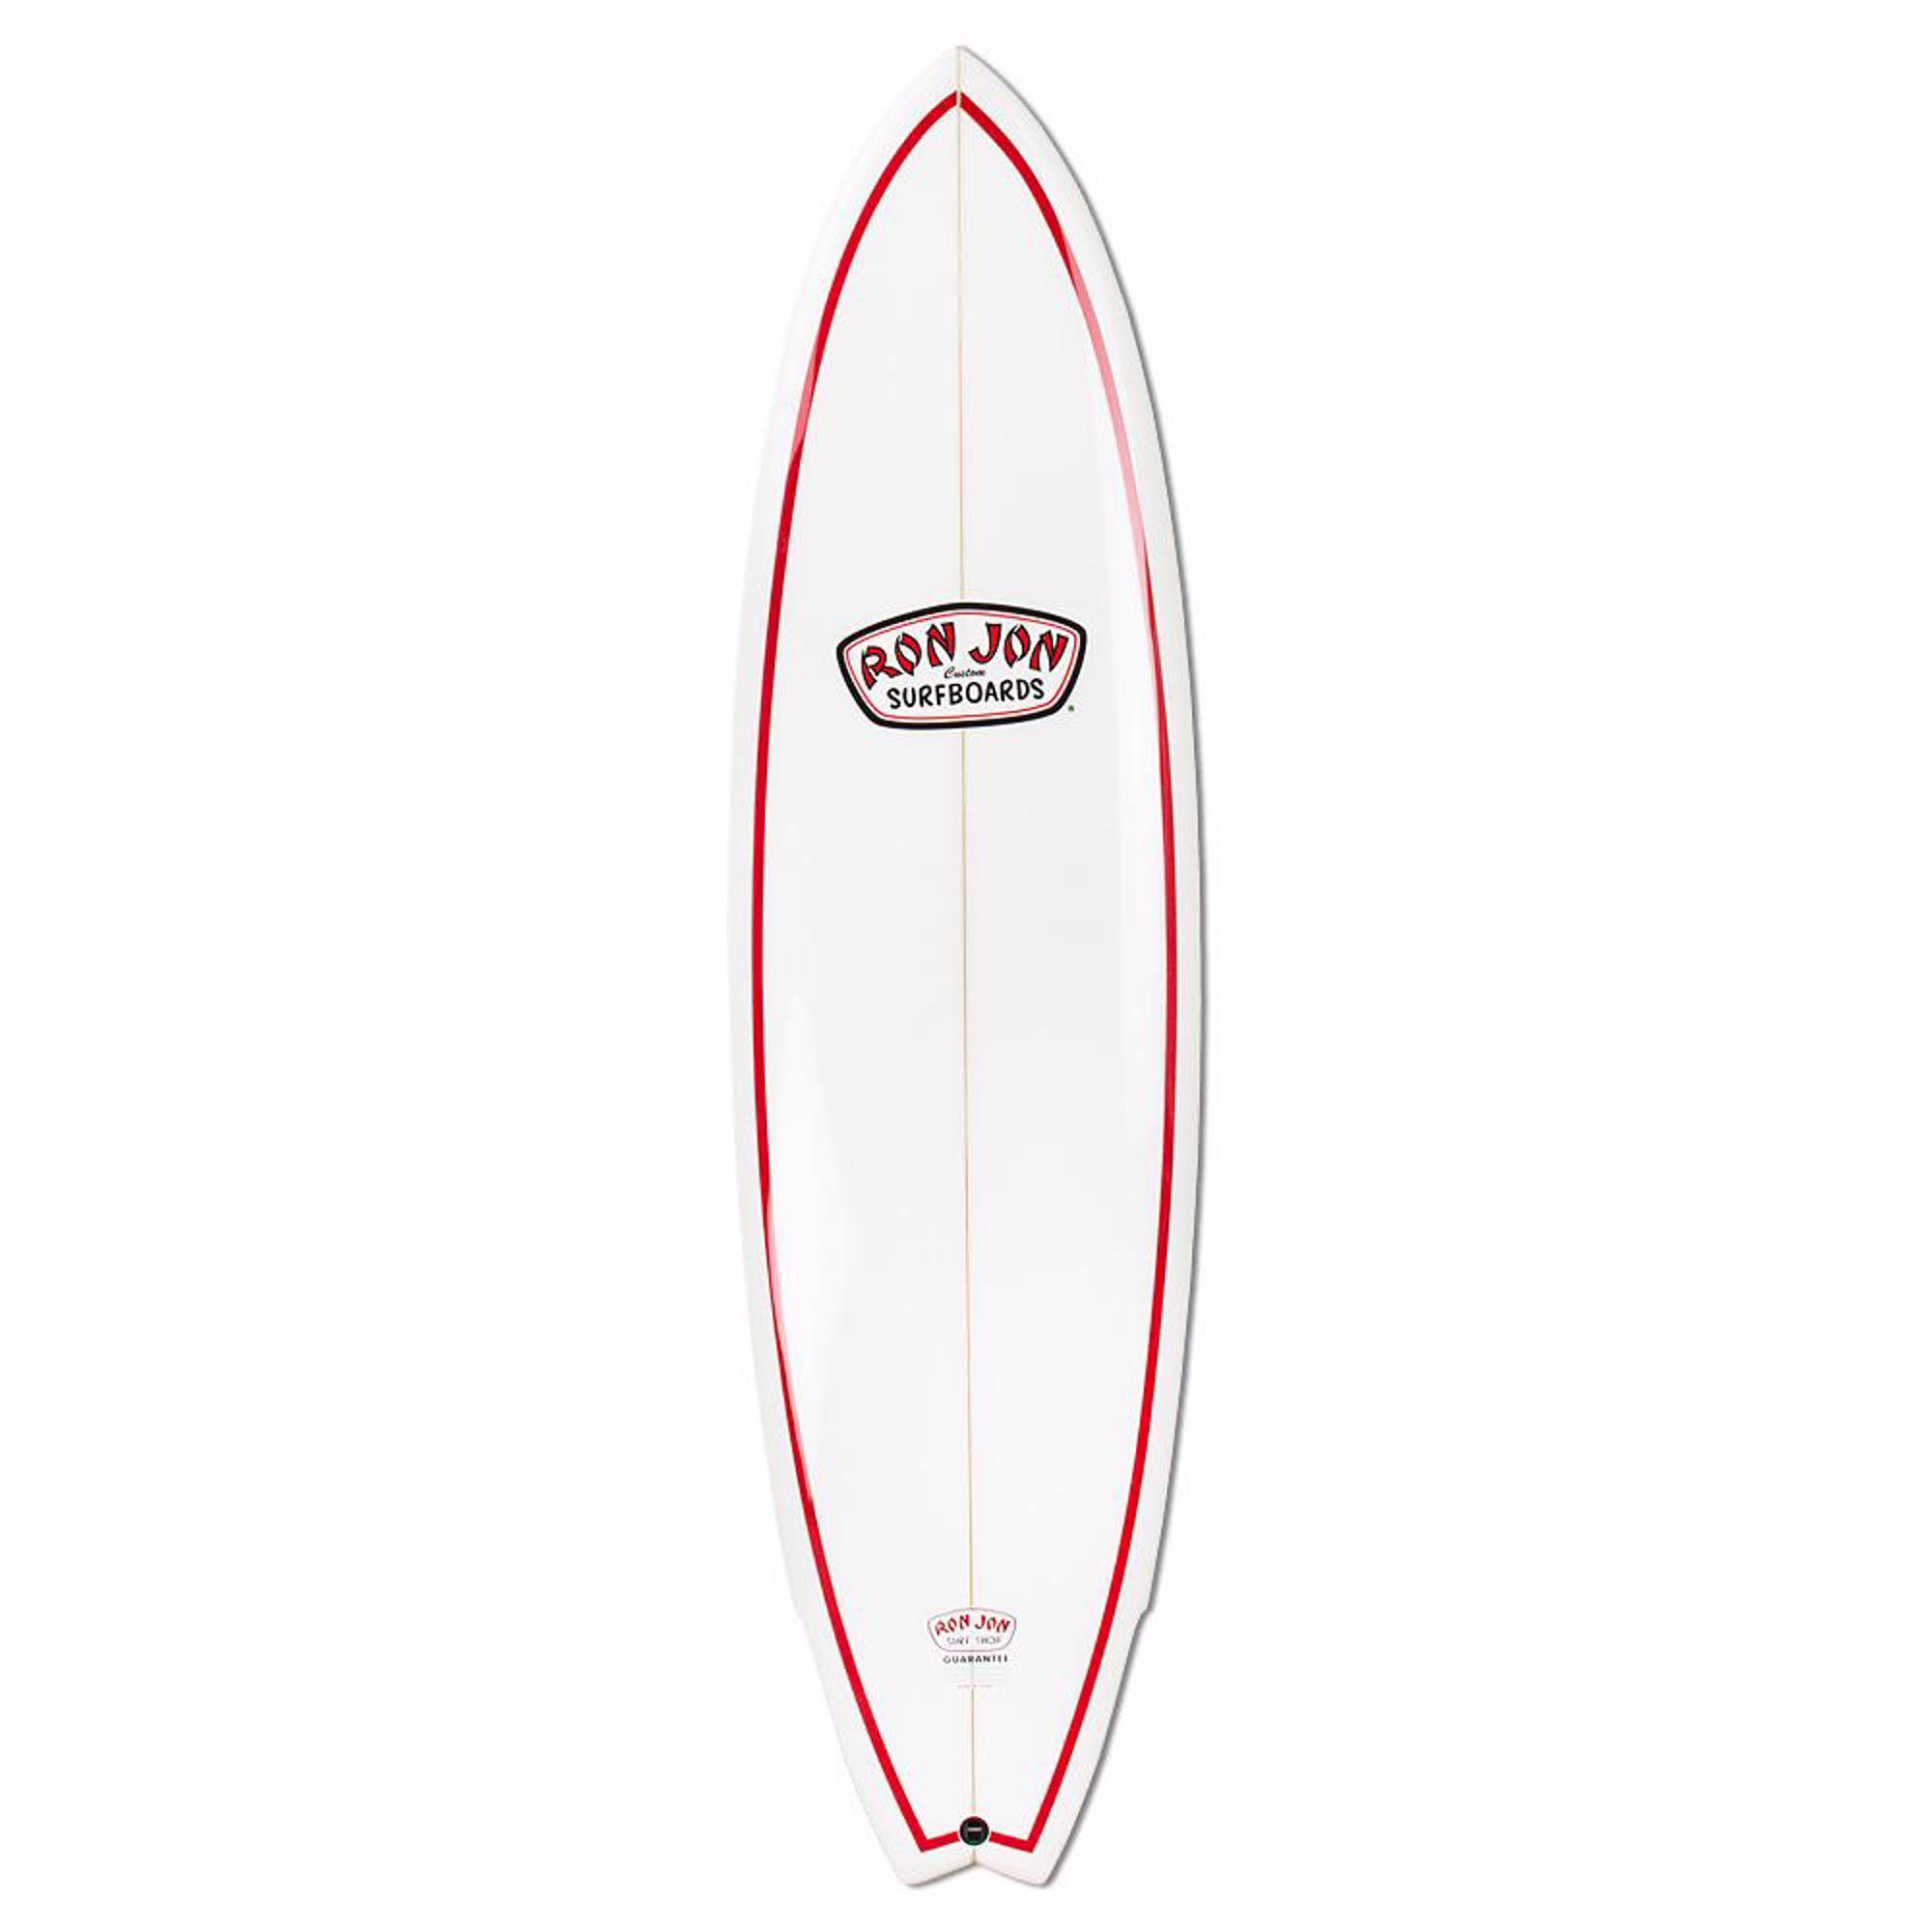 ron jon surf board